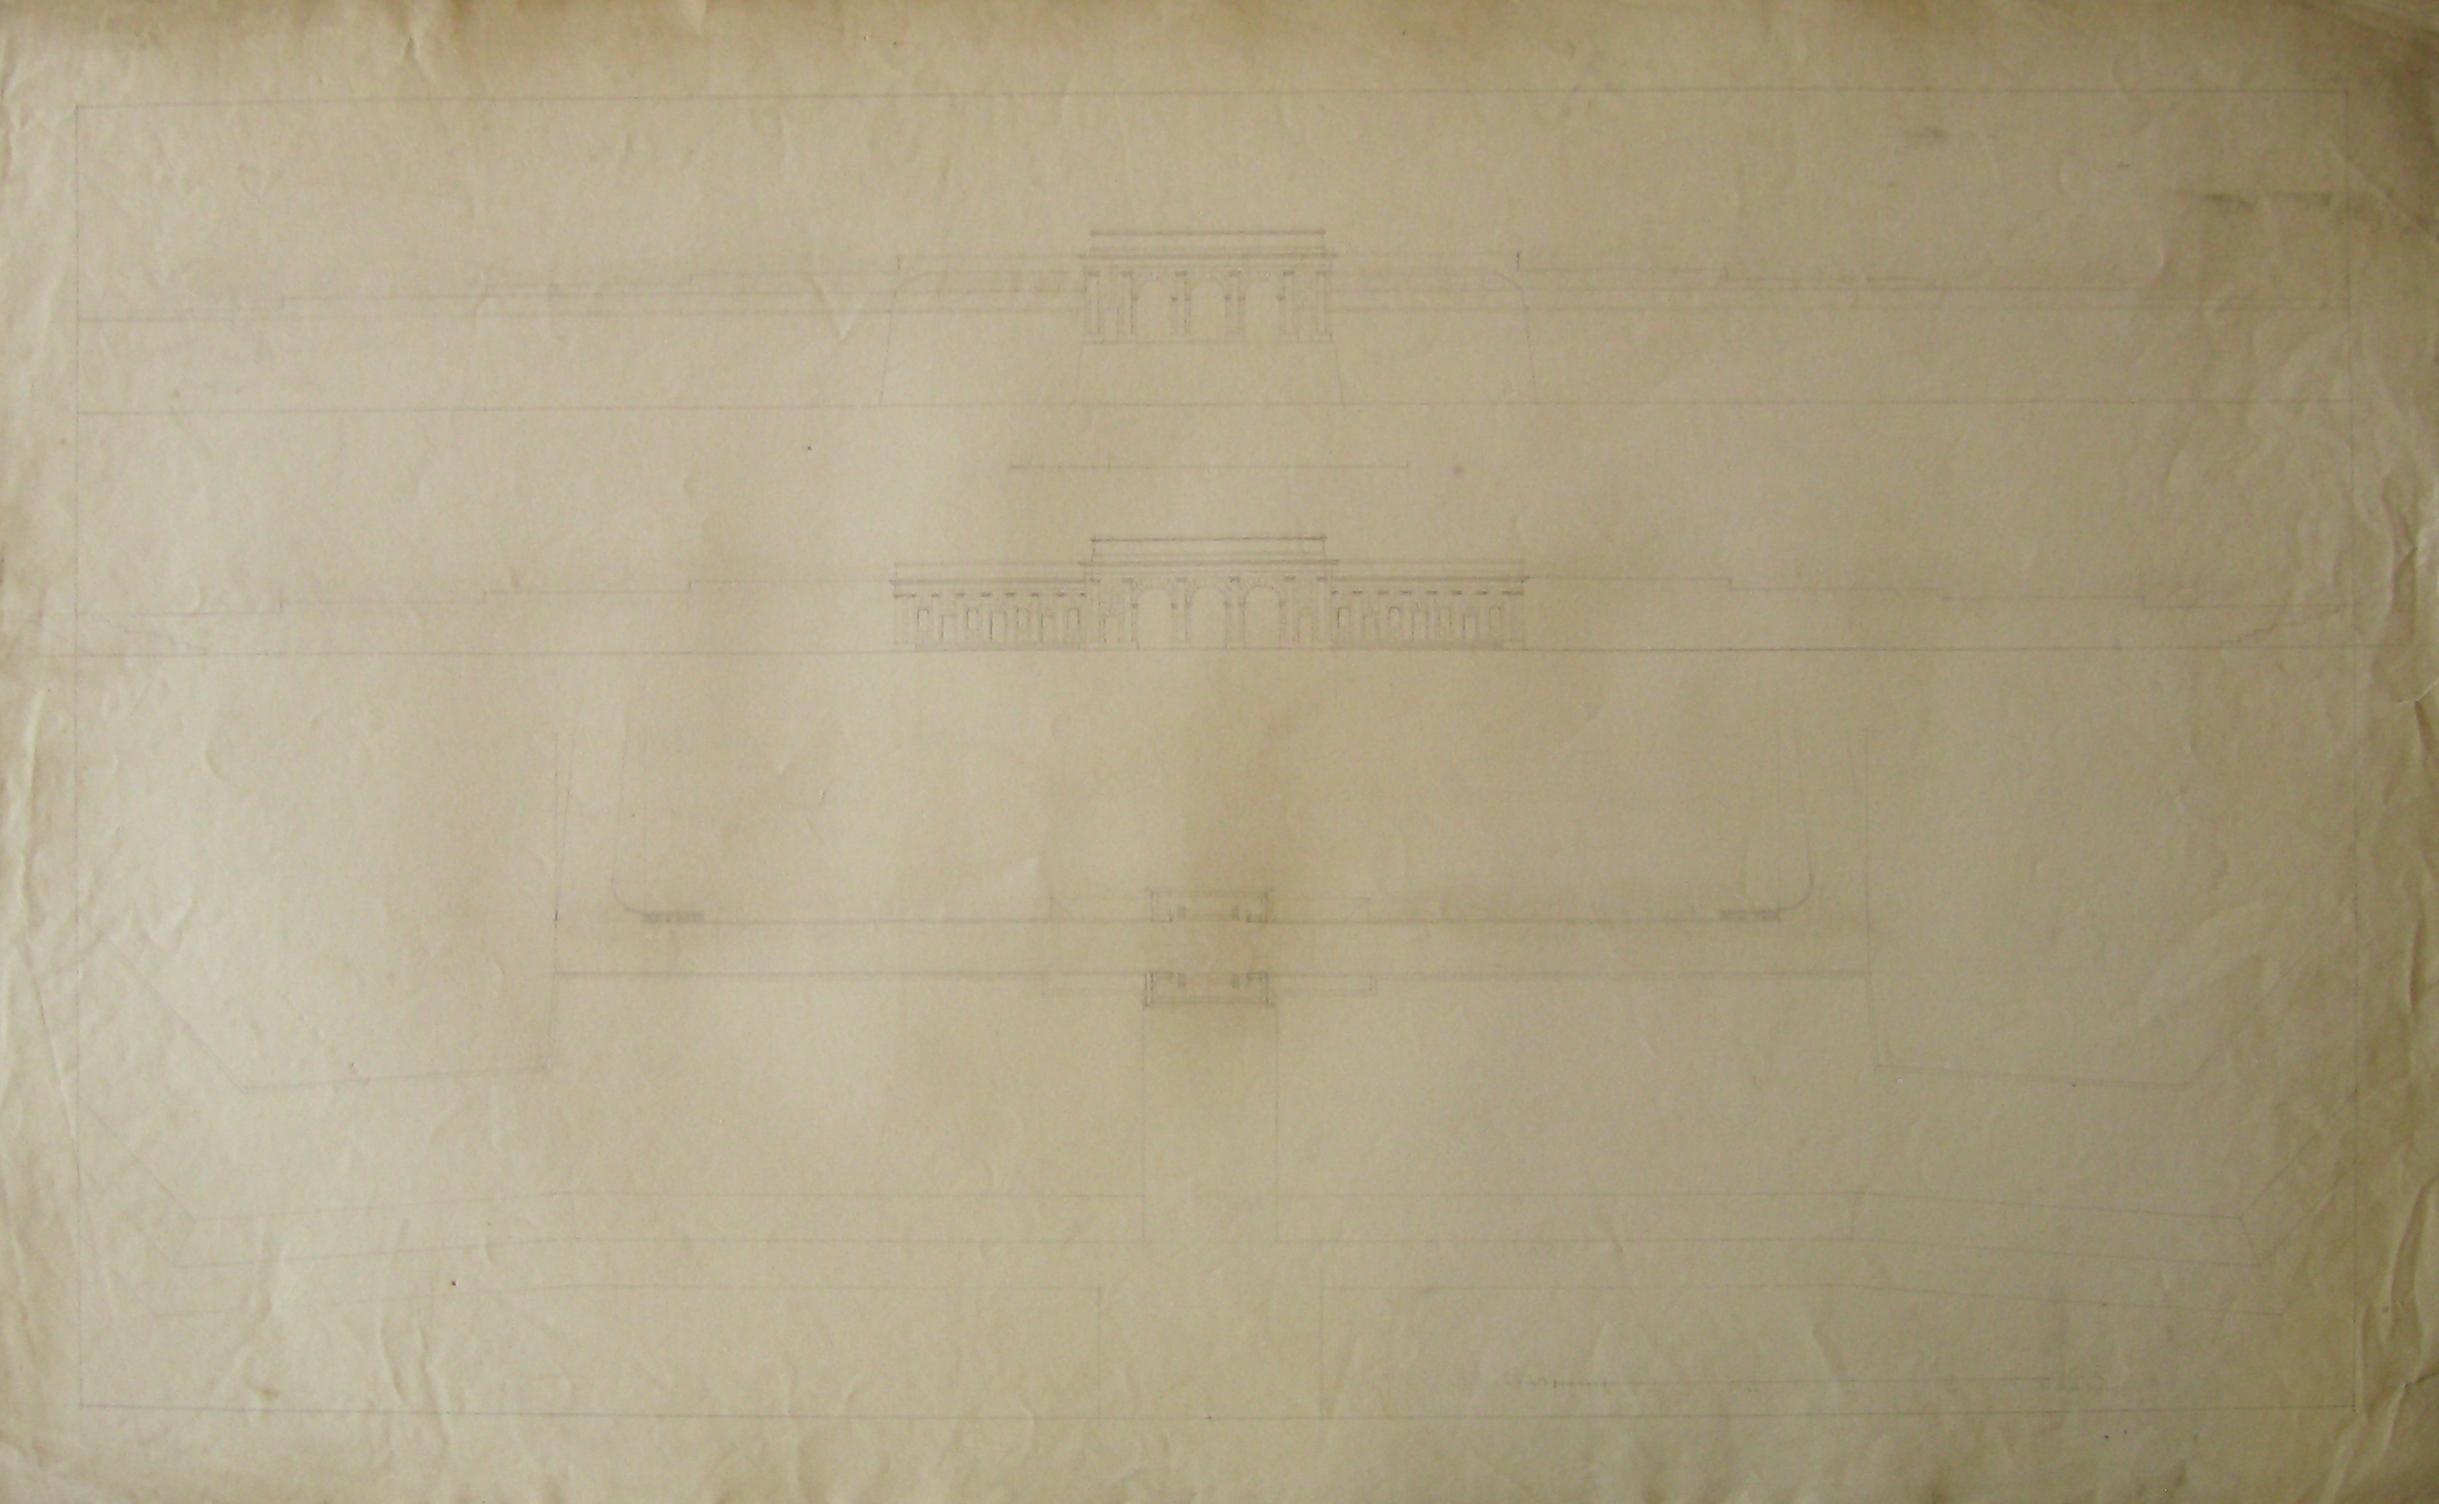 Progetto per il Burgthor (Vienna): pianta e prospetti delle facciate (disegno architettonico, opera isolata) di Cagnola Luigi (sec. XIX)